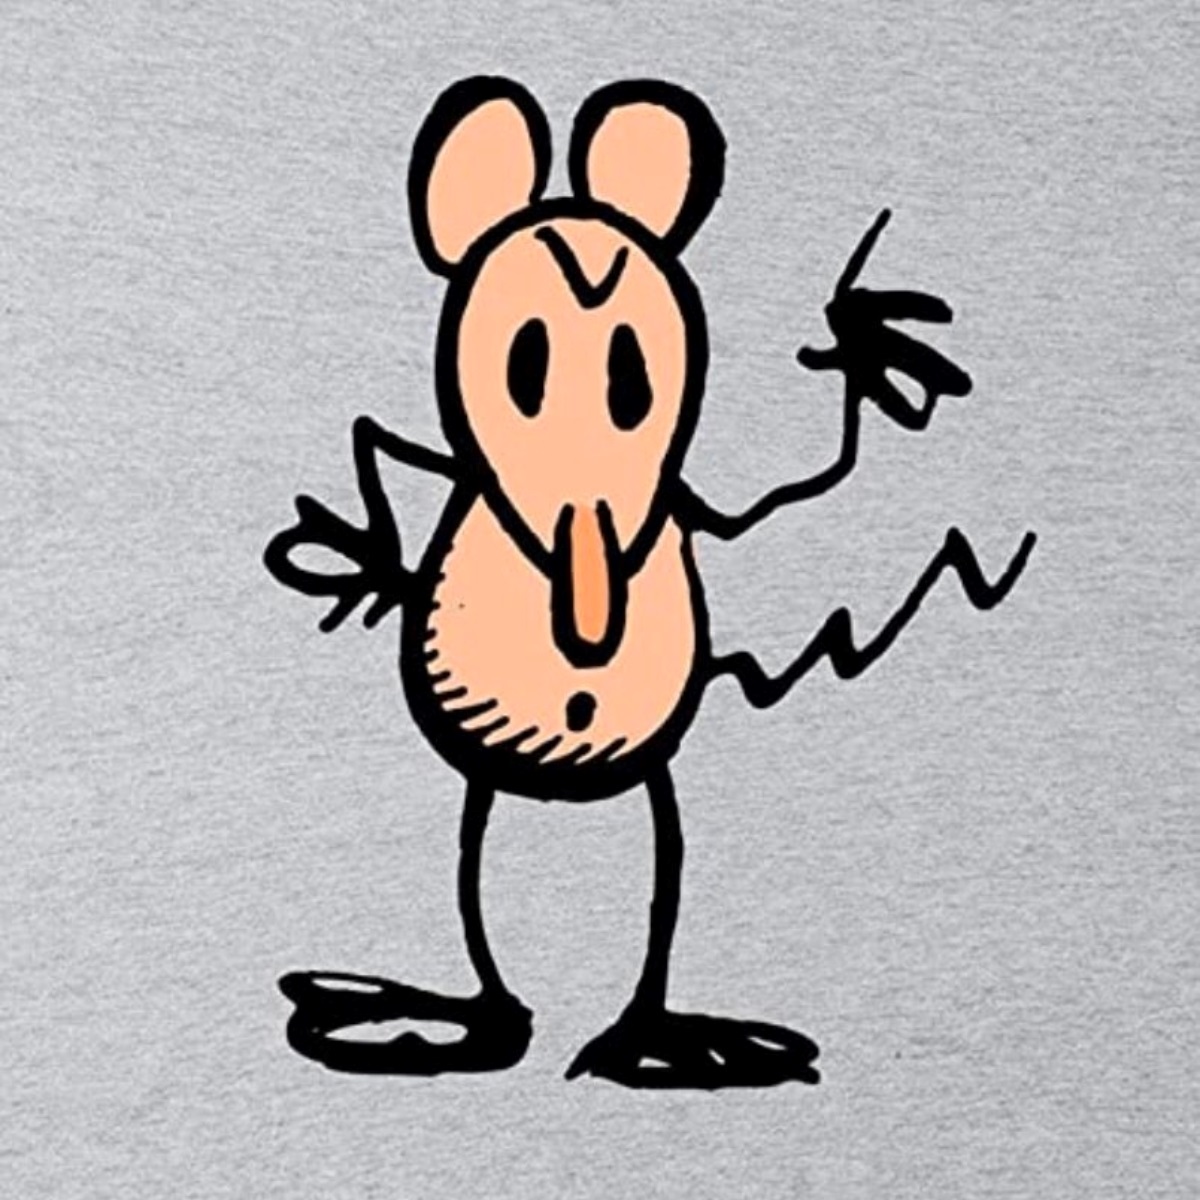 10 Facts About Ignatz Mouse (Krazy Kat) - Facts.net